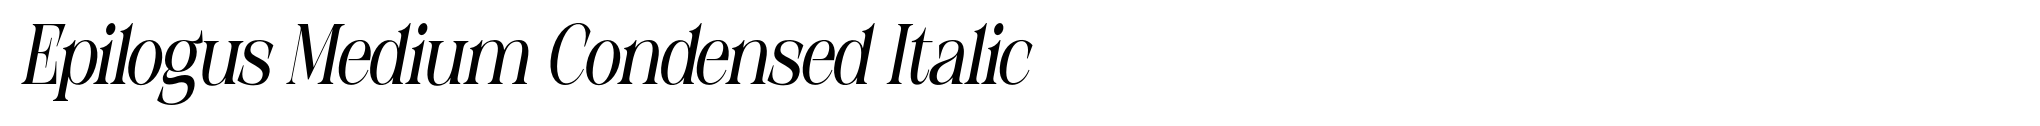 Epilogus Medium Condensed Italic image